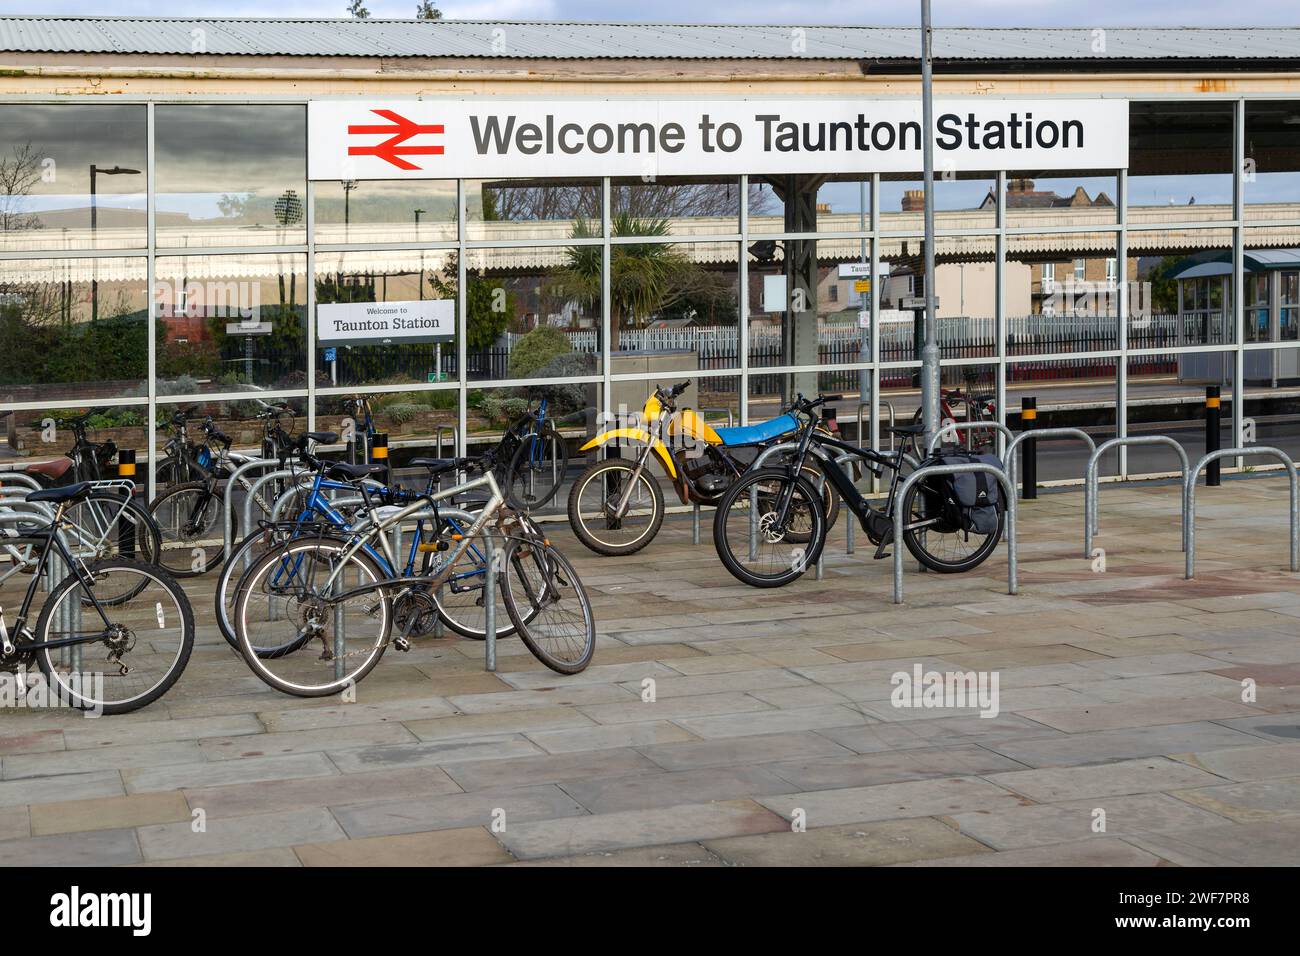 Fahrräder am Bahnhofsschild, Taunton, Somerset, England, Großbritannien - Willkommen am Bahnhof Taunton Stockfoto